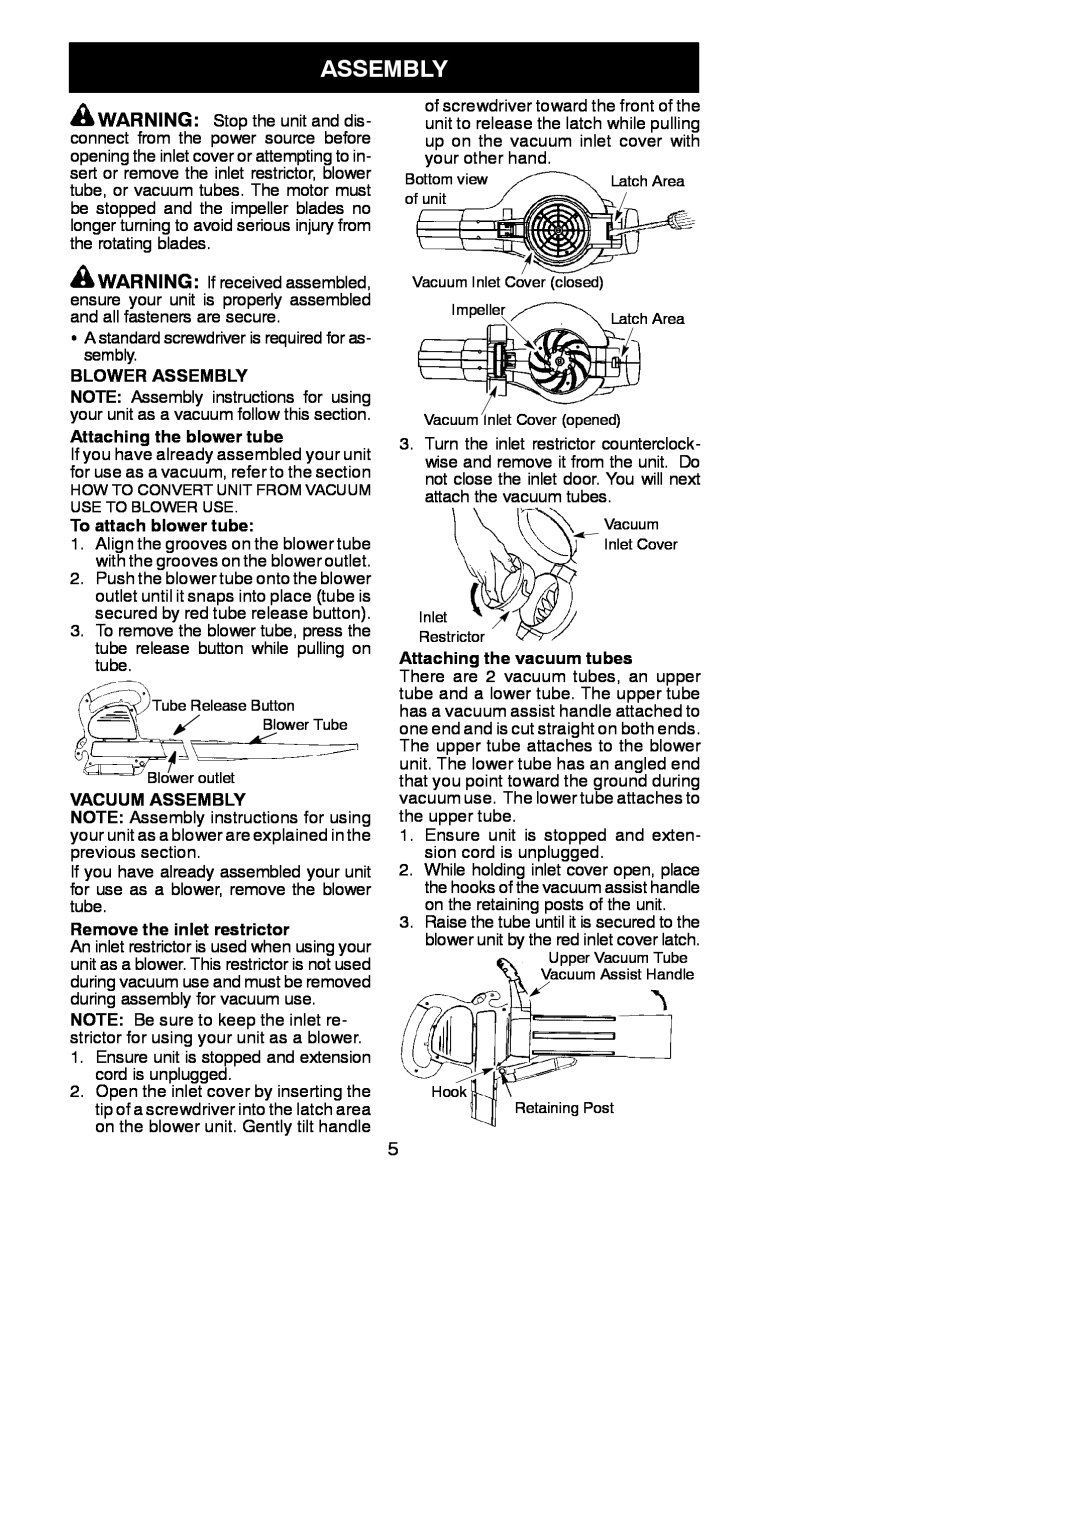 Poulan EBV 215 instruction manual Blower Assembly, Attaching the blower tube, To attach blower tube, Vacuum Assembly 